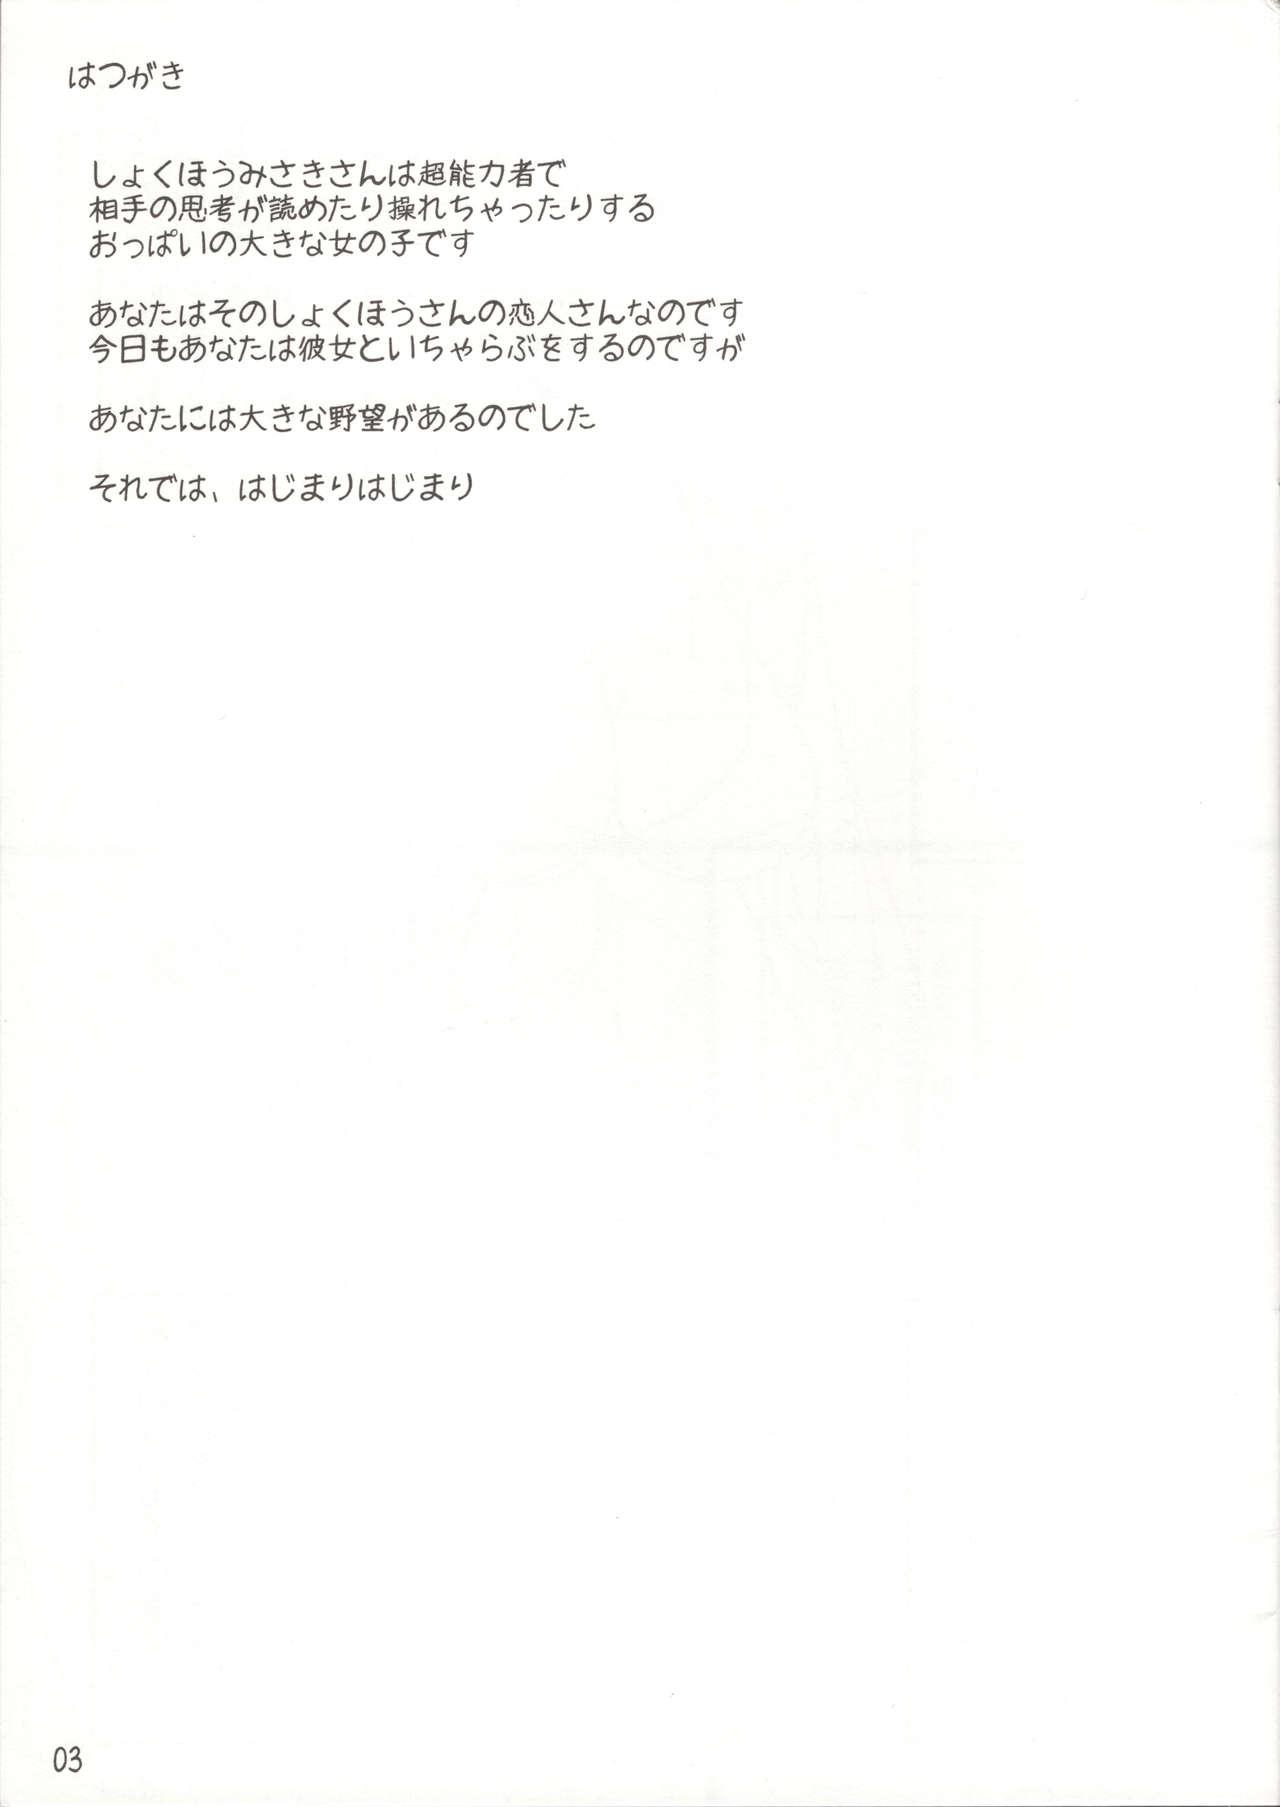 Magrinha Misaki chito issho! - Toaru kagaku no railgun Point Of View - Page 2